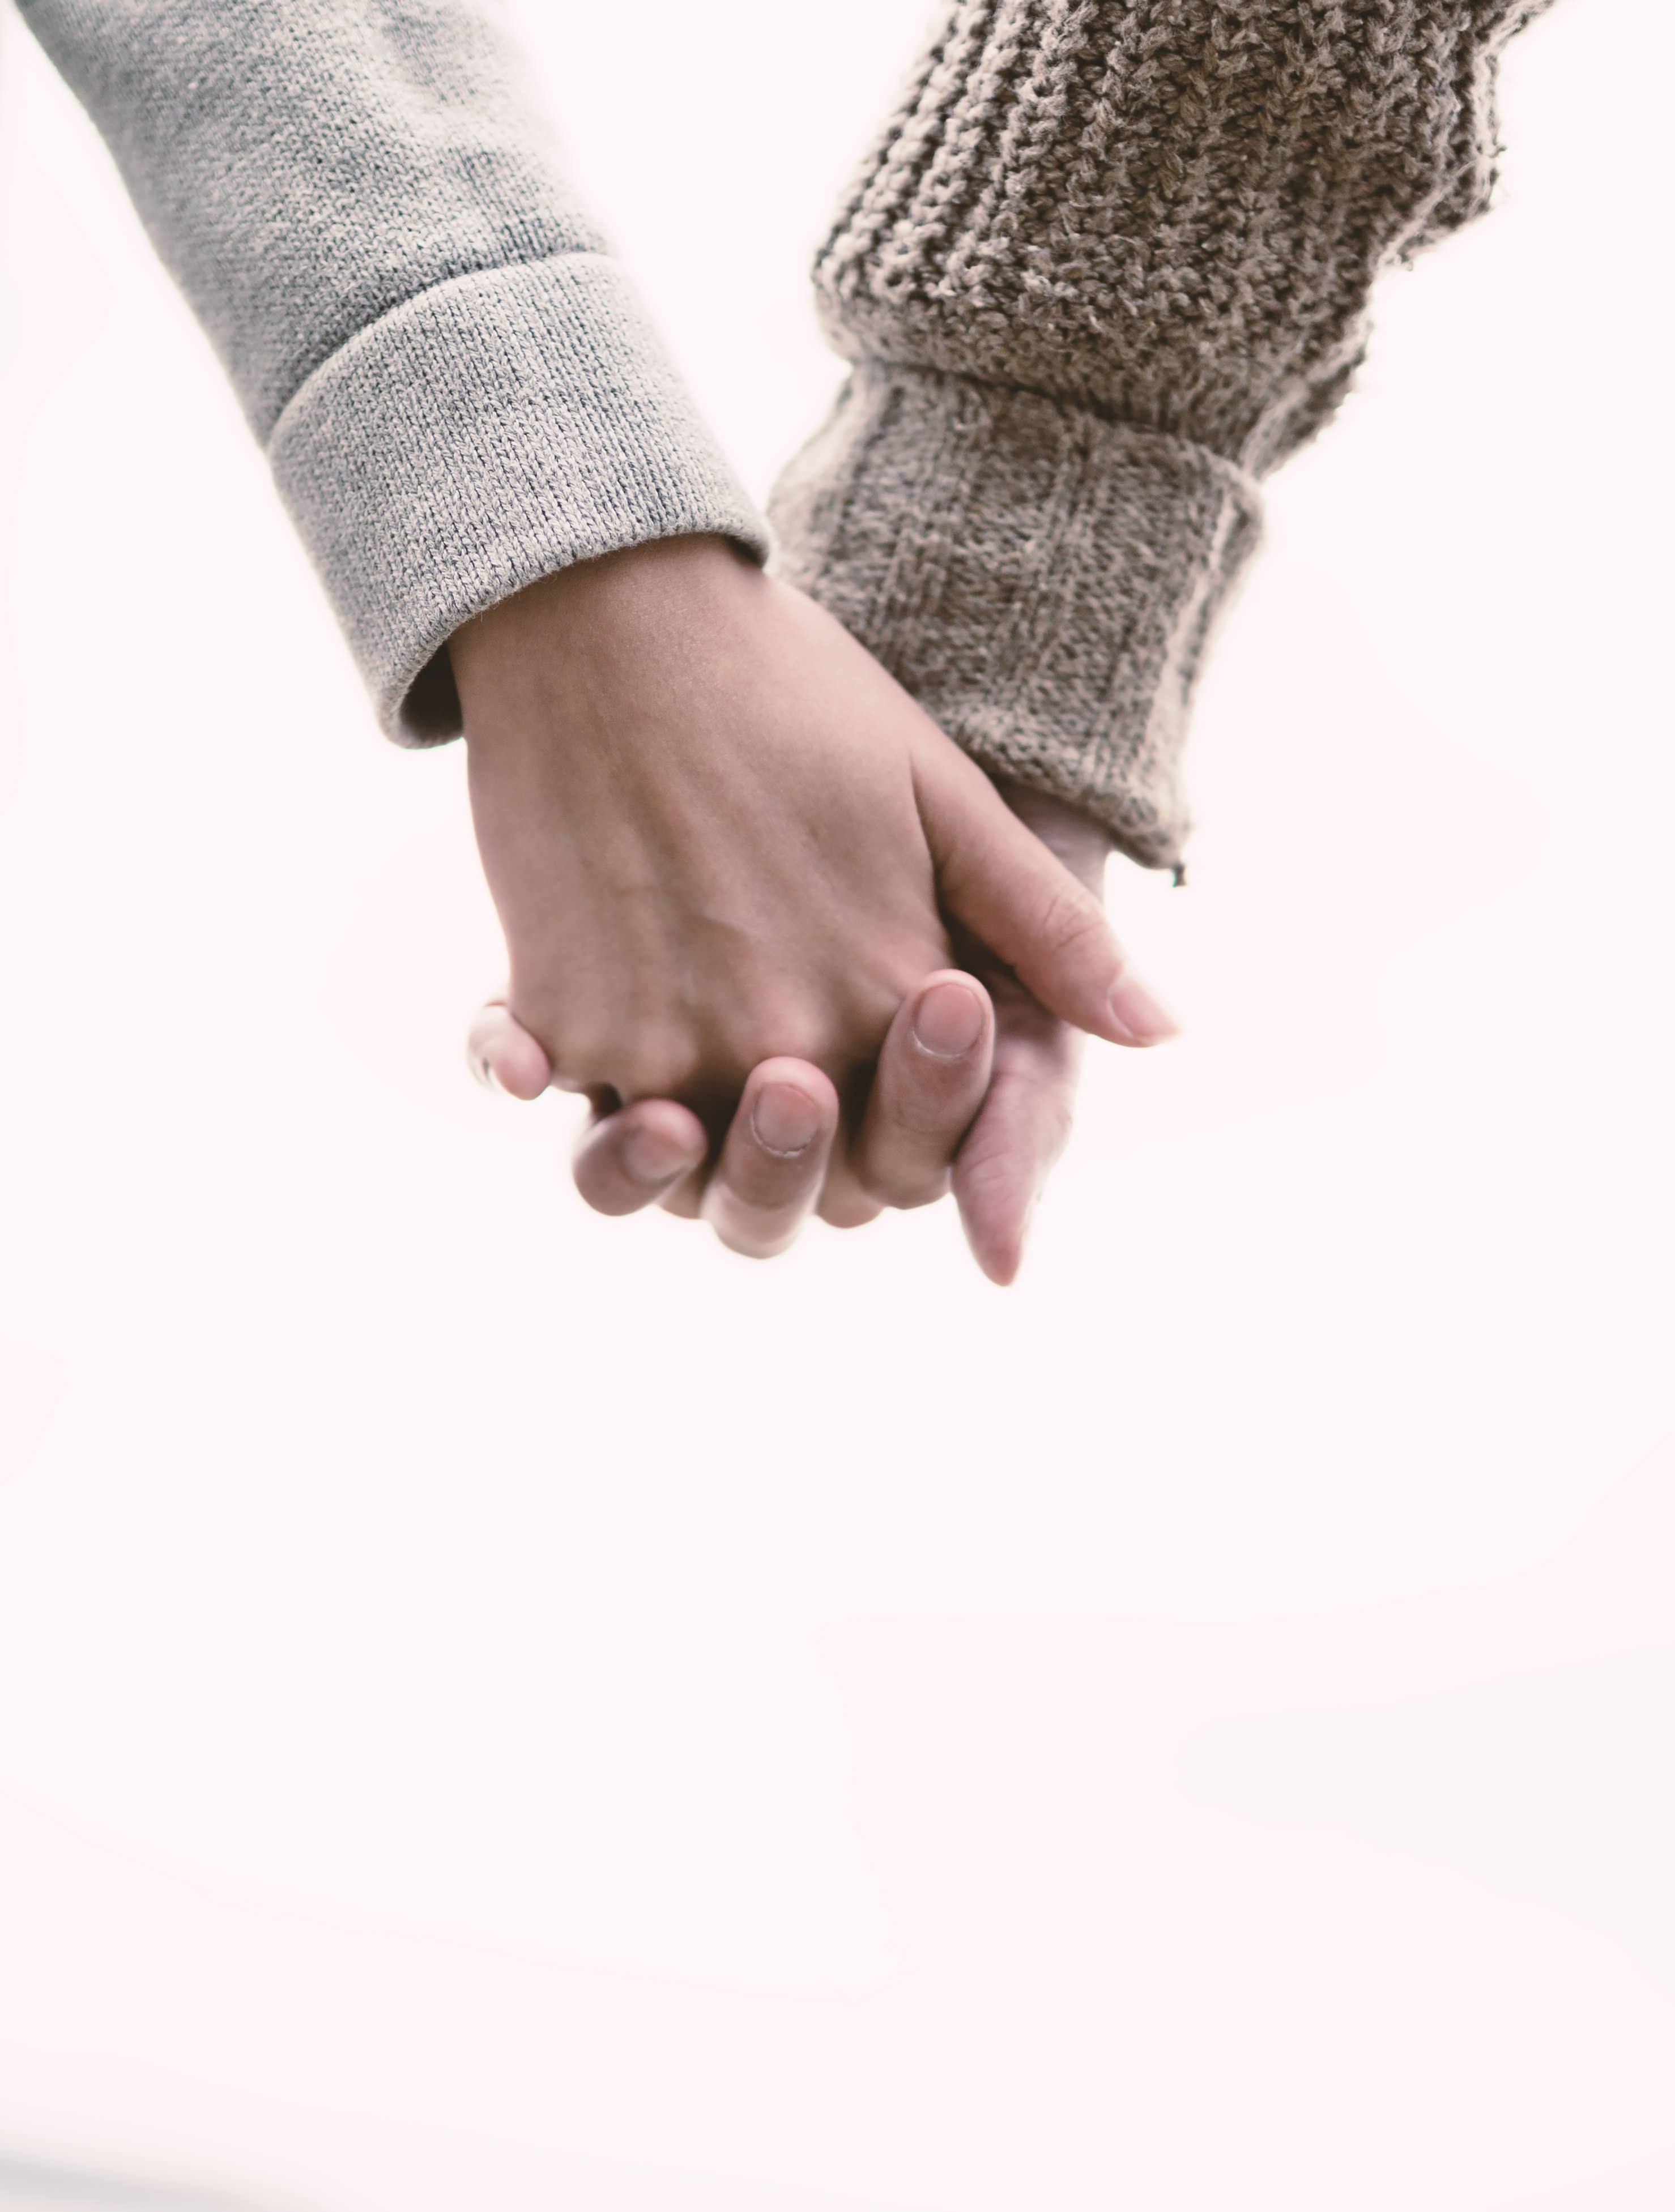 恋人と手をつなぐ Love握り の写真素材 ぱくたそ